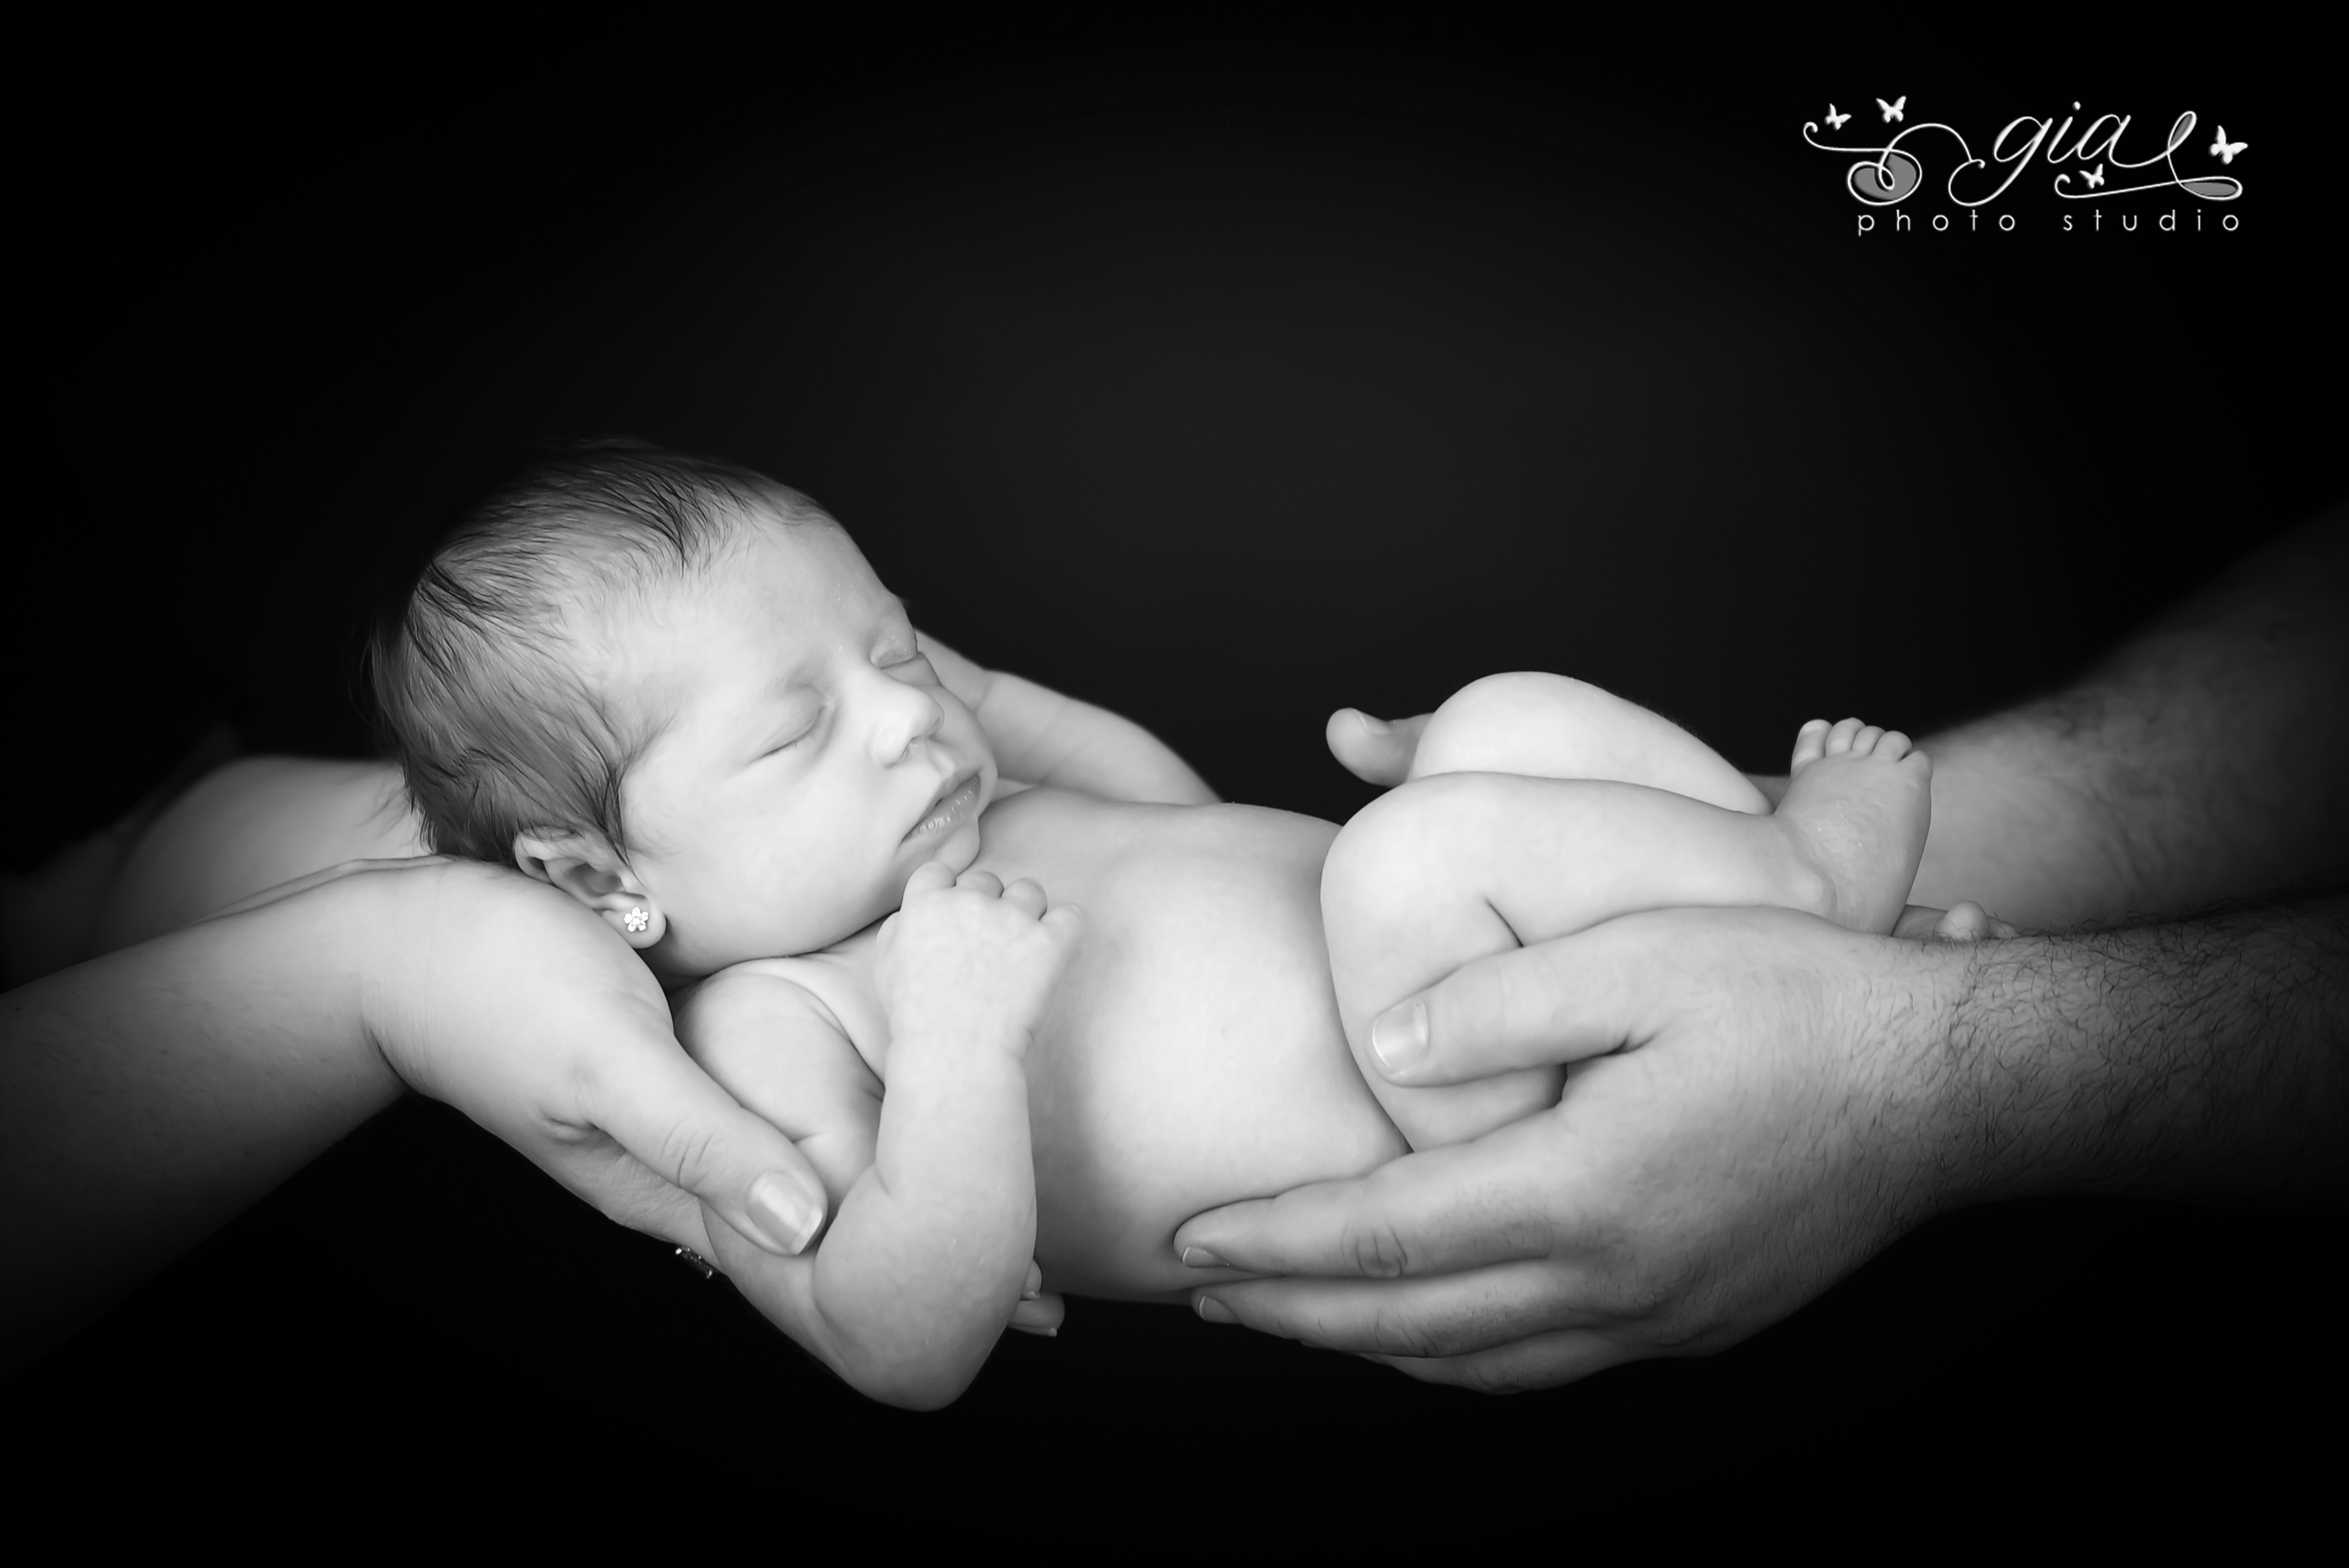 Bebelus la 18 zile la gia photo studio